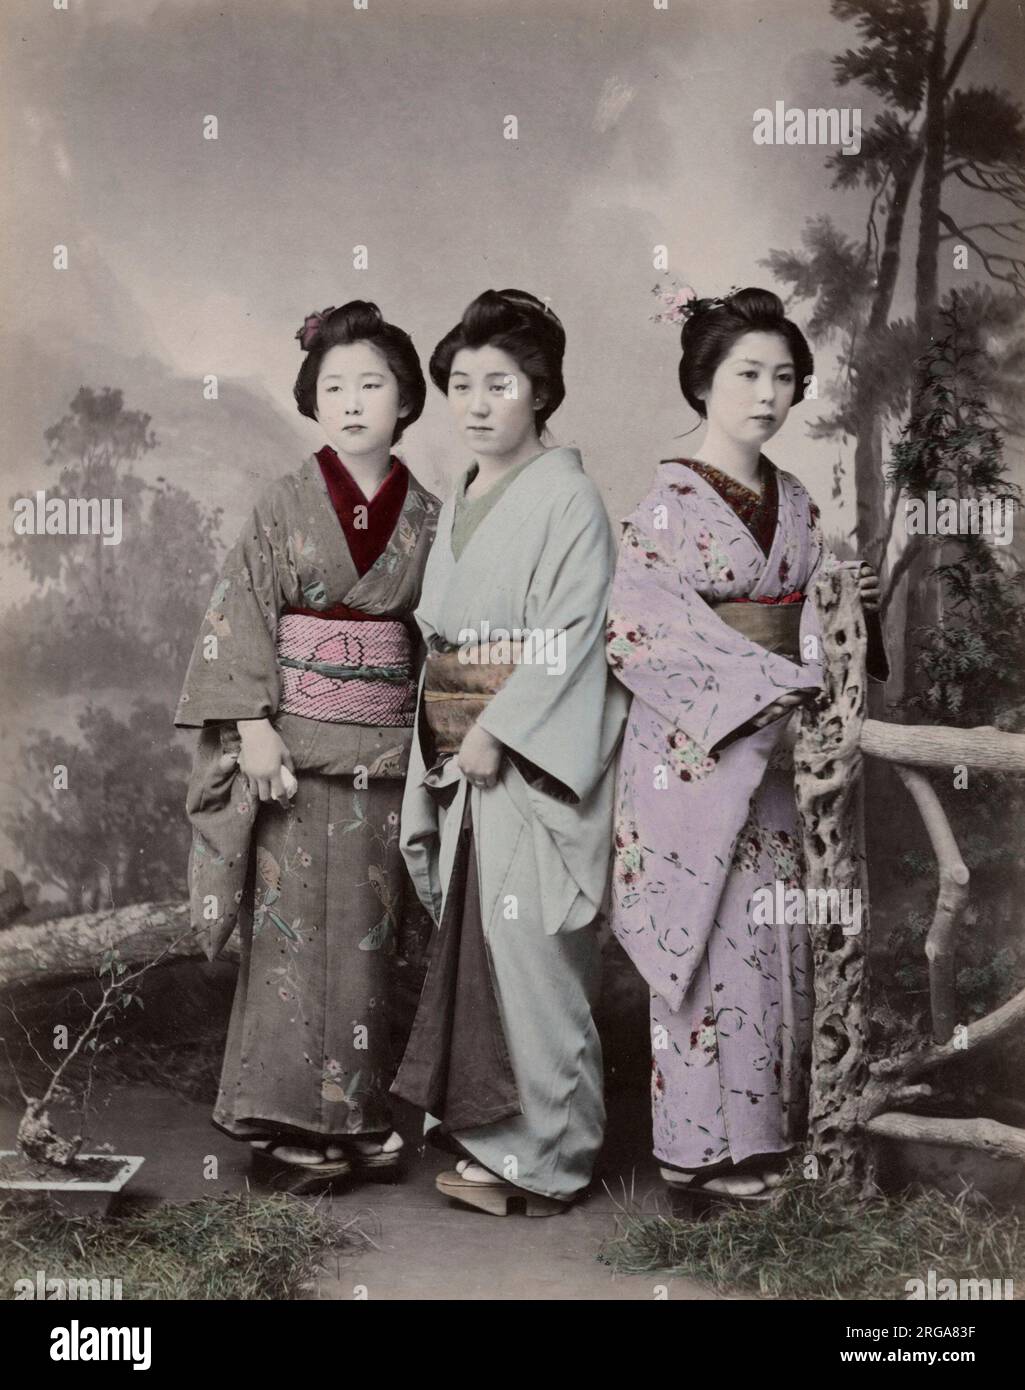 Drei junge japanische Frauen. Vintage 19. Jahrhundert Foto. Stockfoto